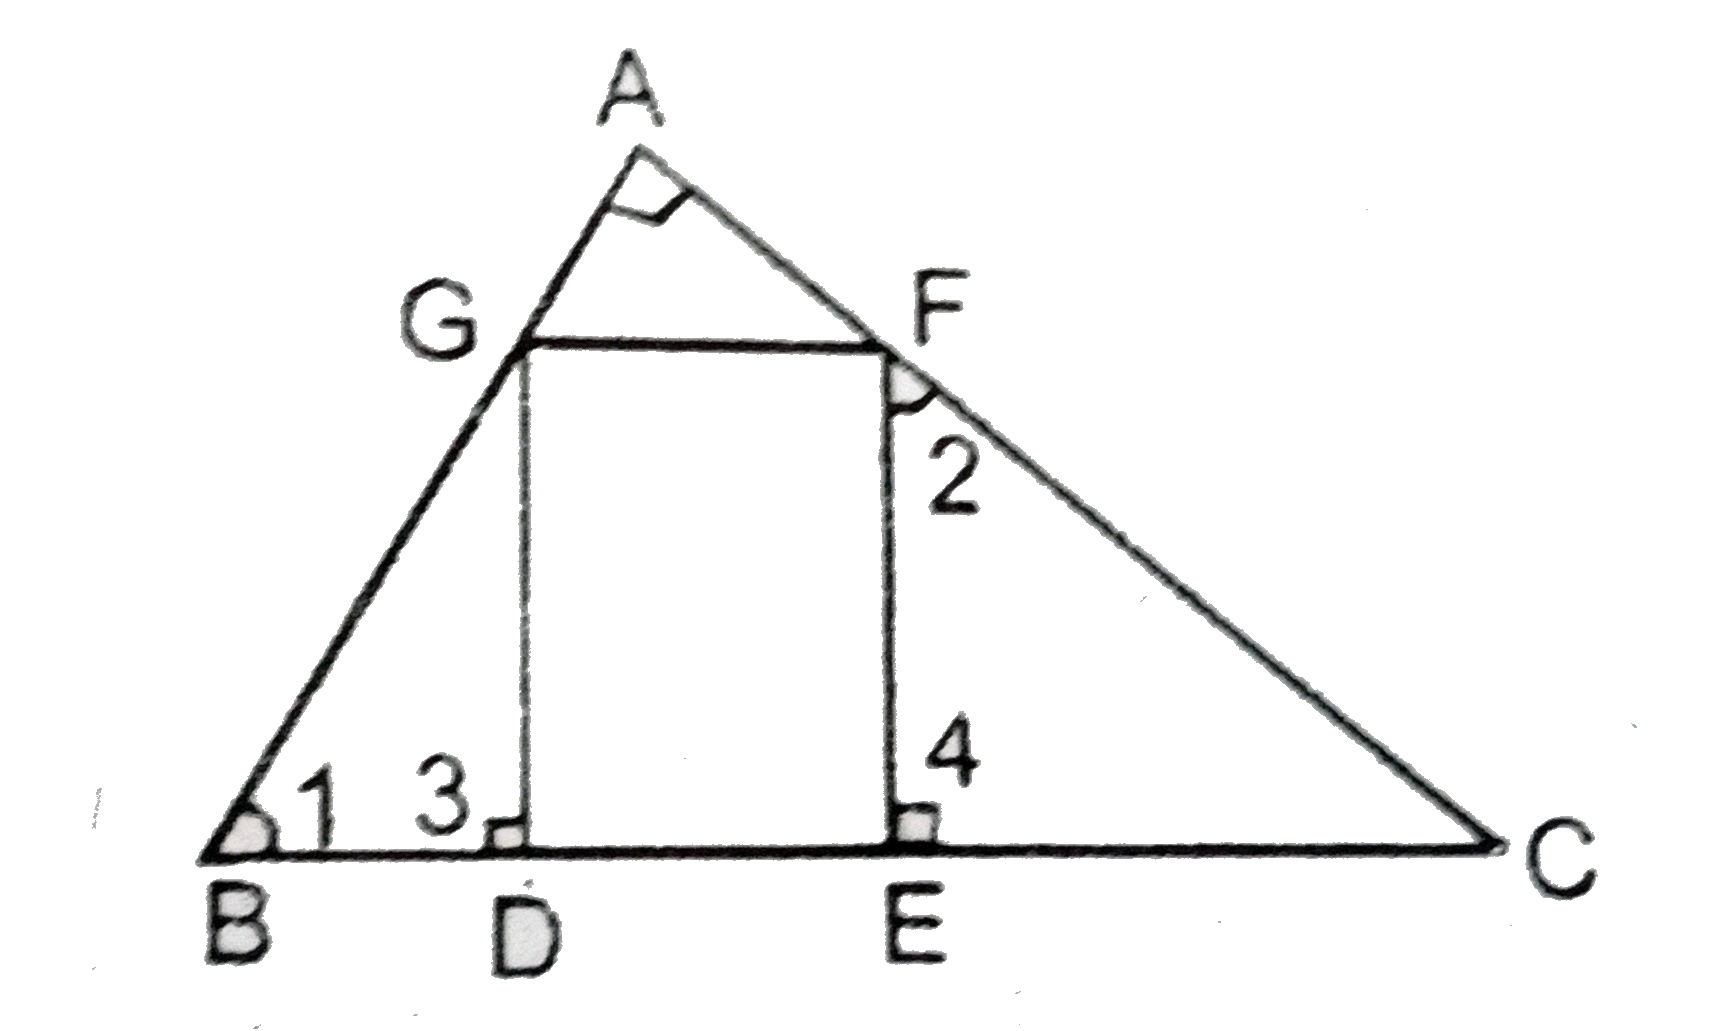 दिए गये चित्र में DEFG एक वर्ग है और angleBAC एक समकोण है । दिखायें कि DE^2=BDxxEC.